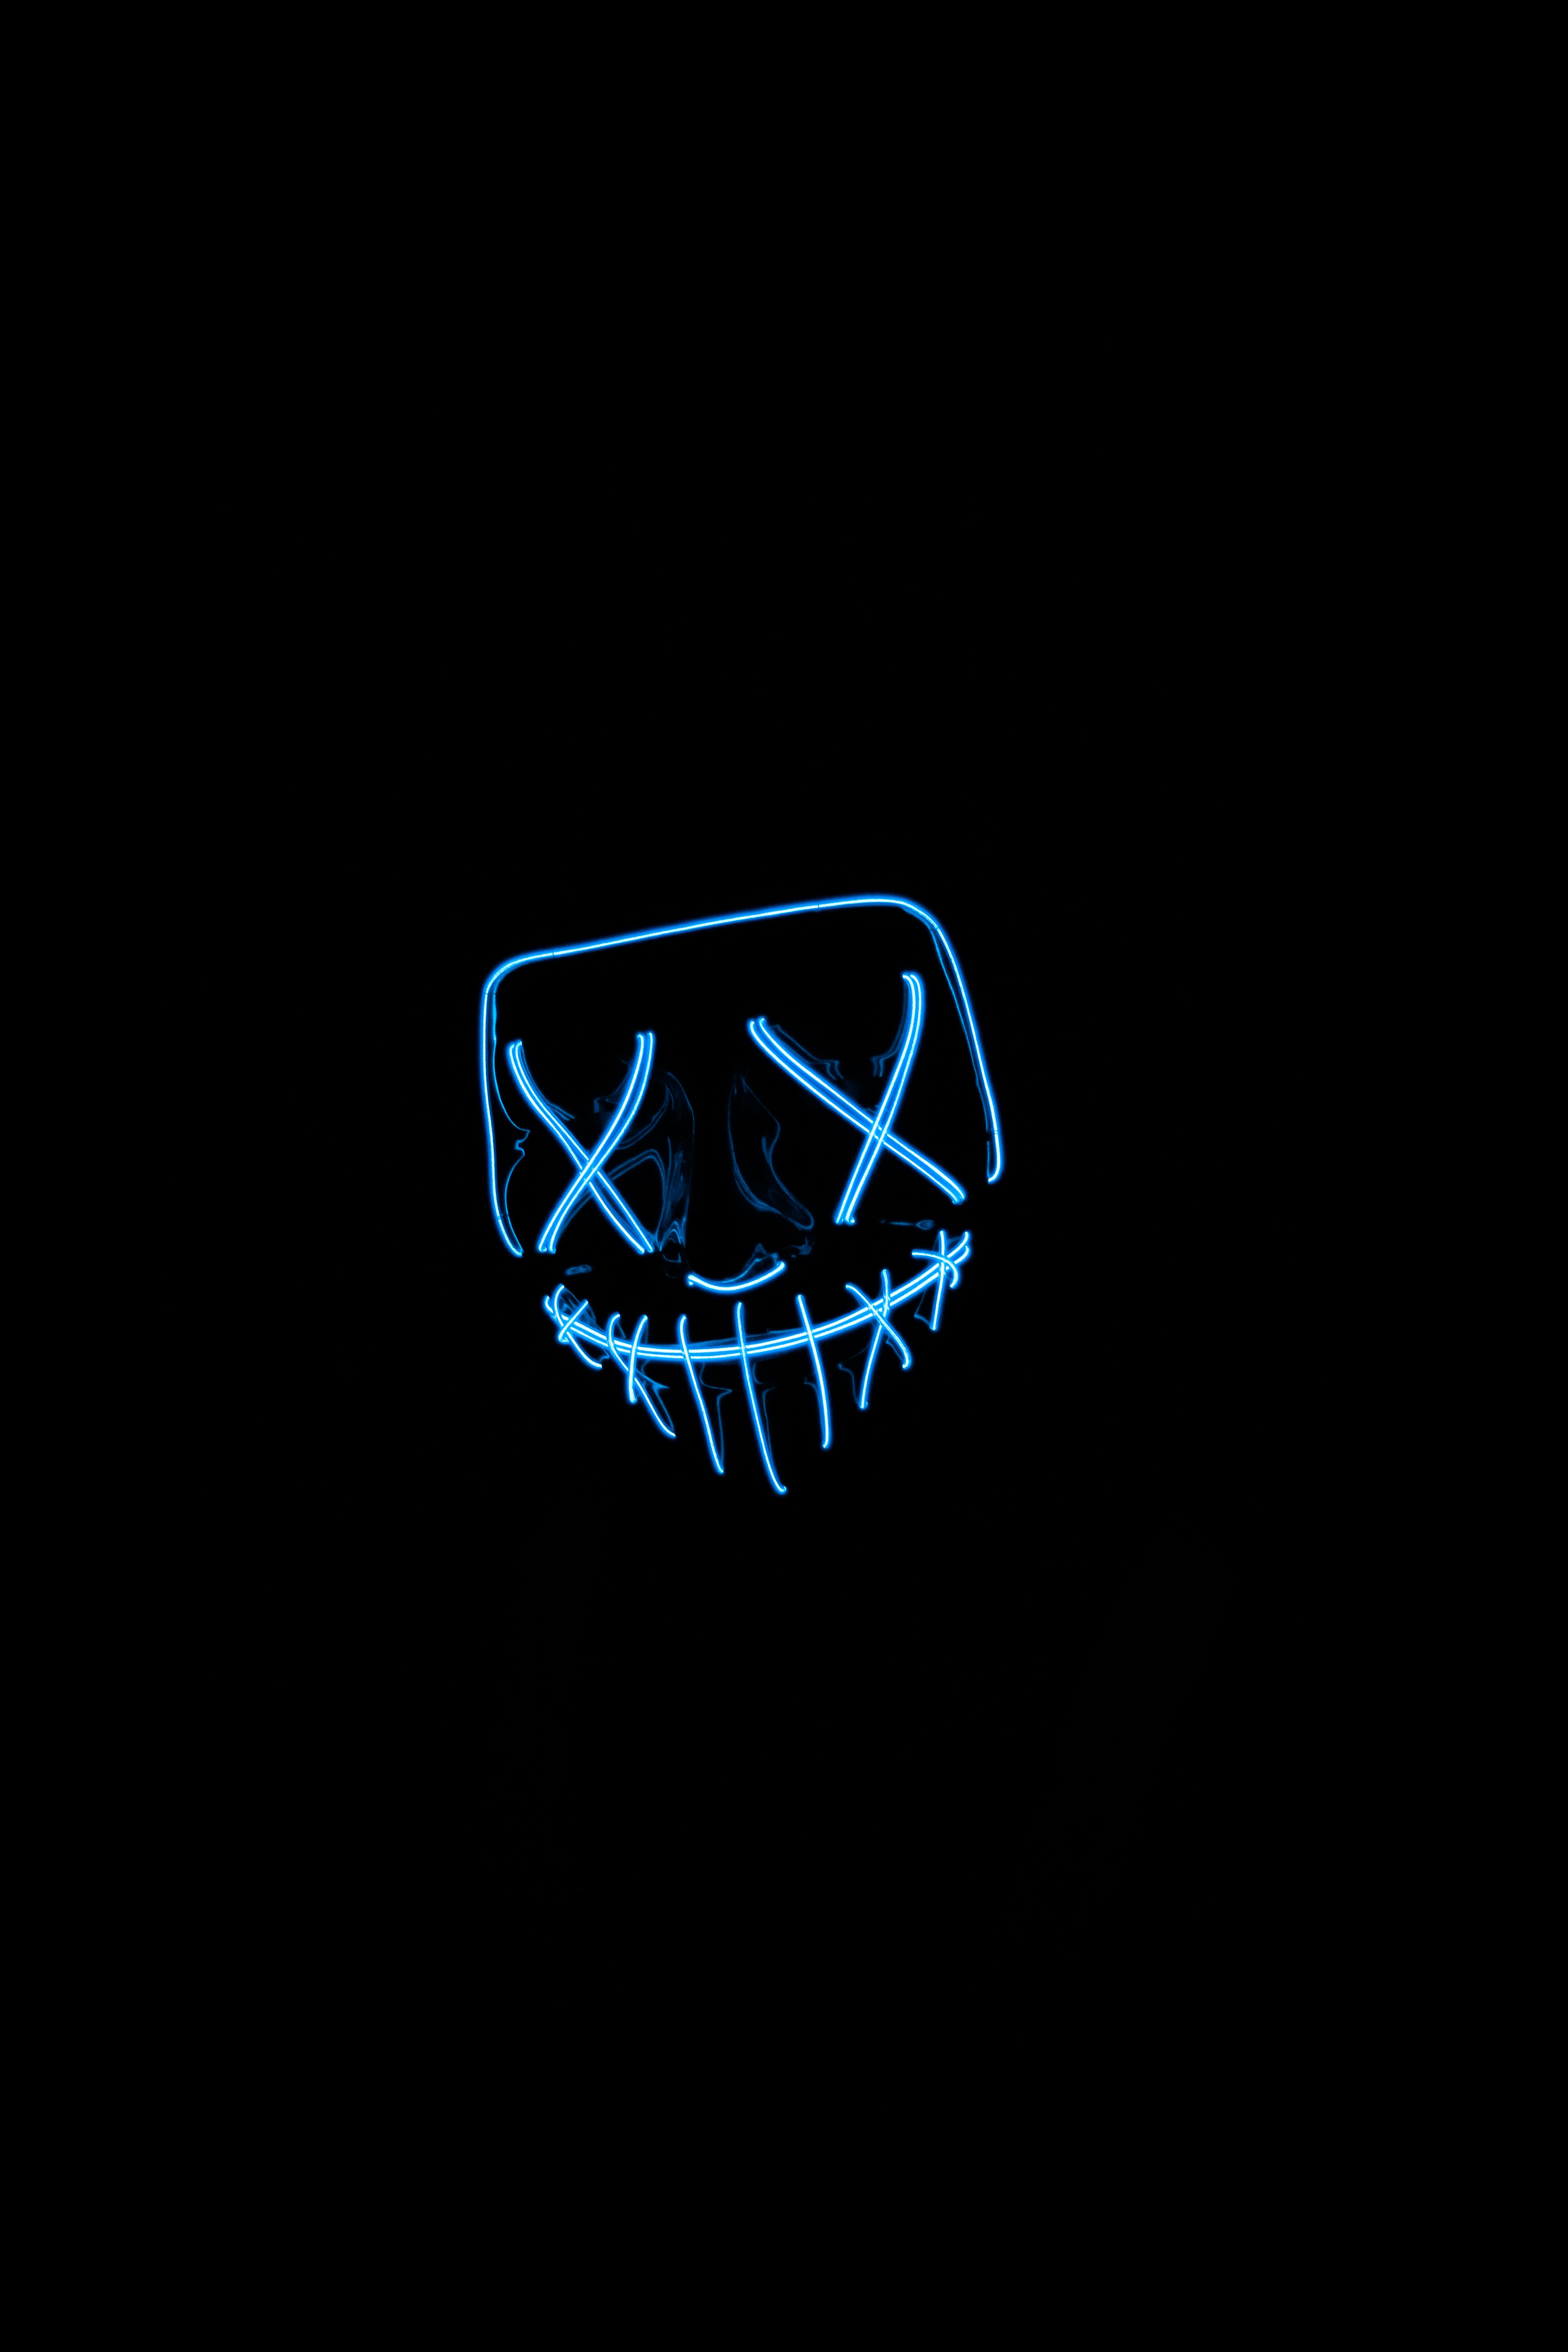 mask, dark, neon, darkness Free Stock Photo